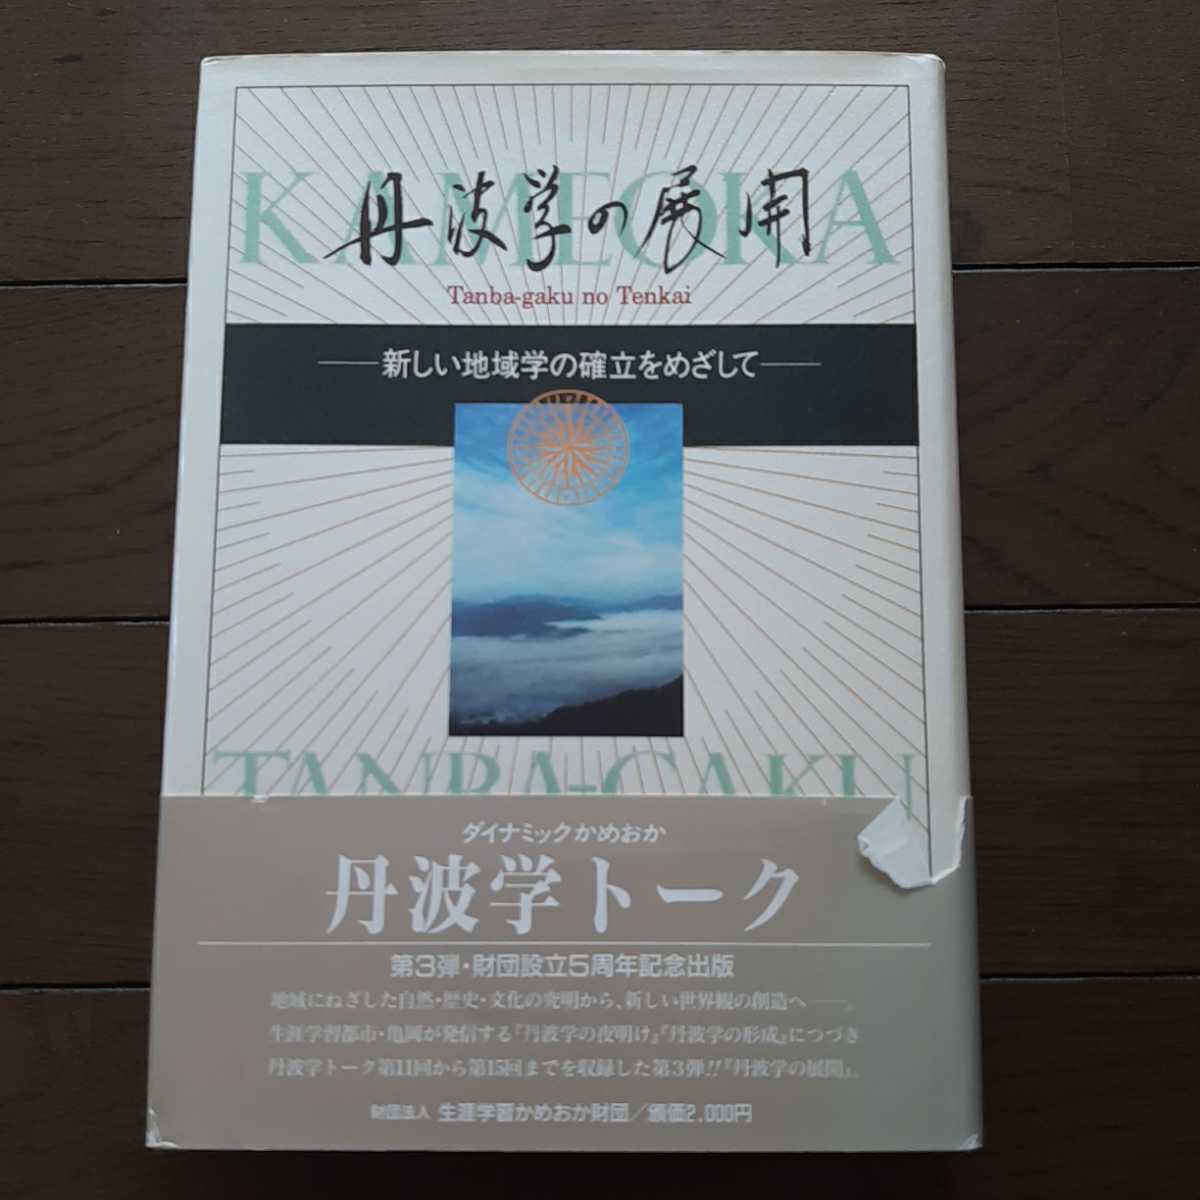 大人の上質 丹波学の展開 京都新聞社 生涯学習かめおか財団 文化、民俗